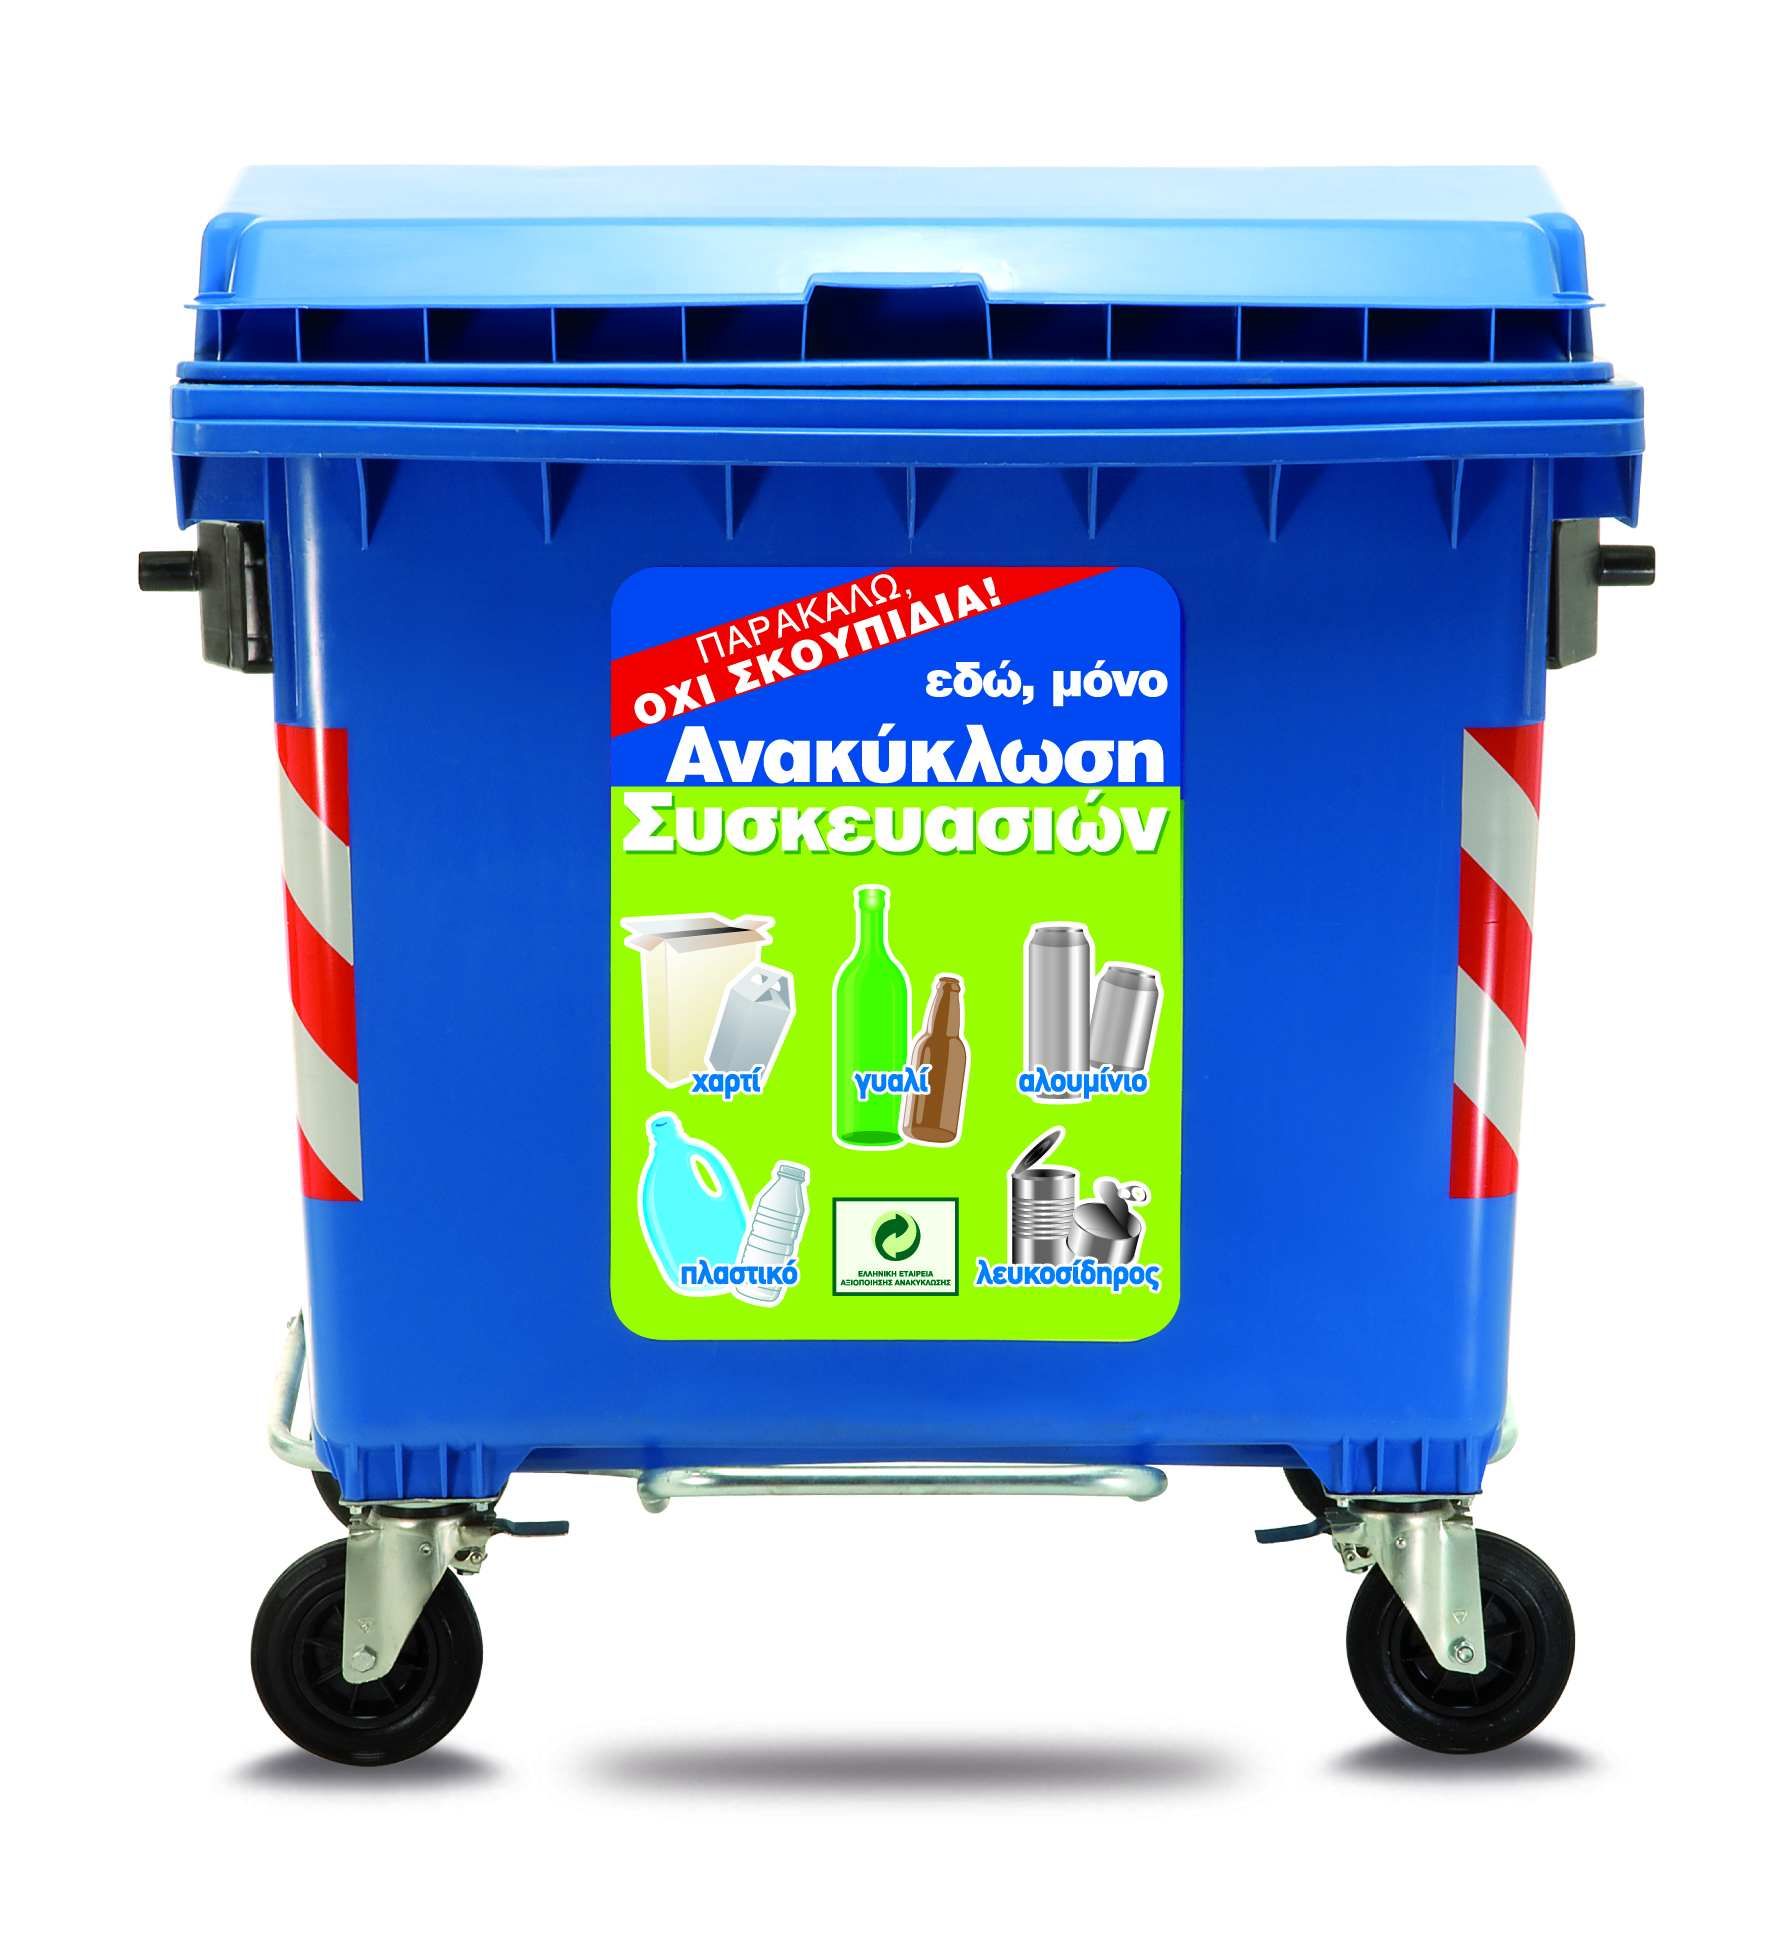 240.000 τόνοι ανακυκλώσιμων υλικών ανακτήθηκαν από τους μπλε κάδους το 2012